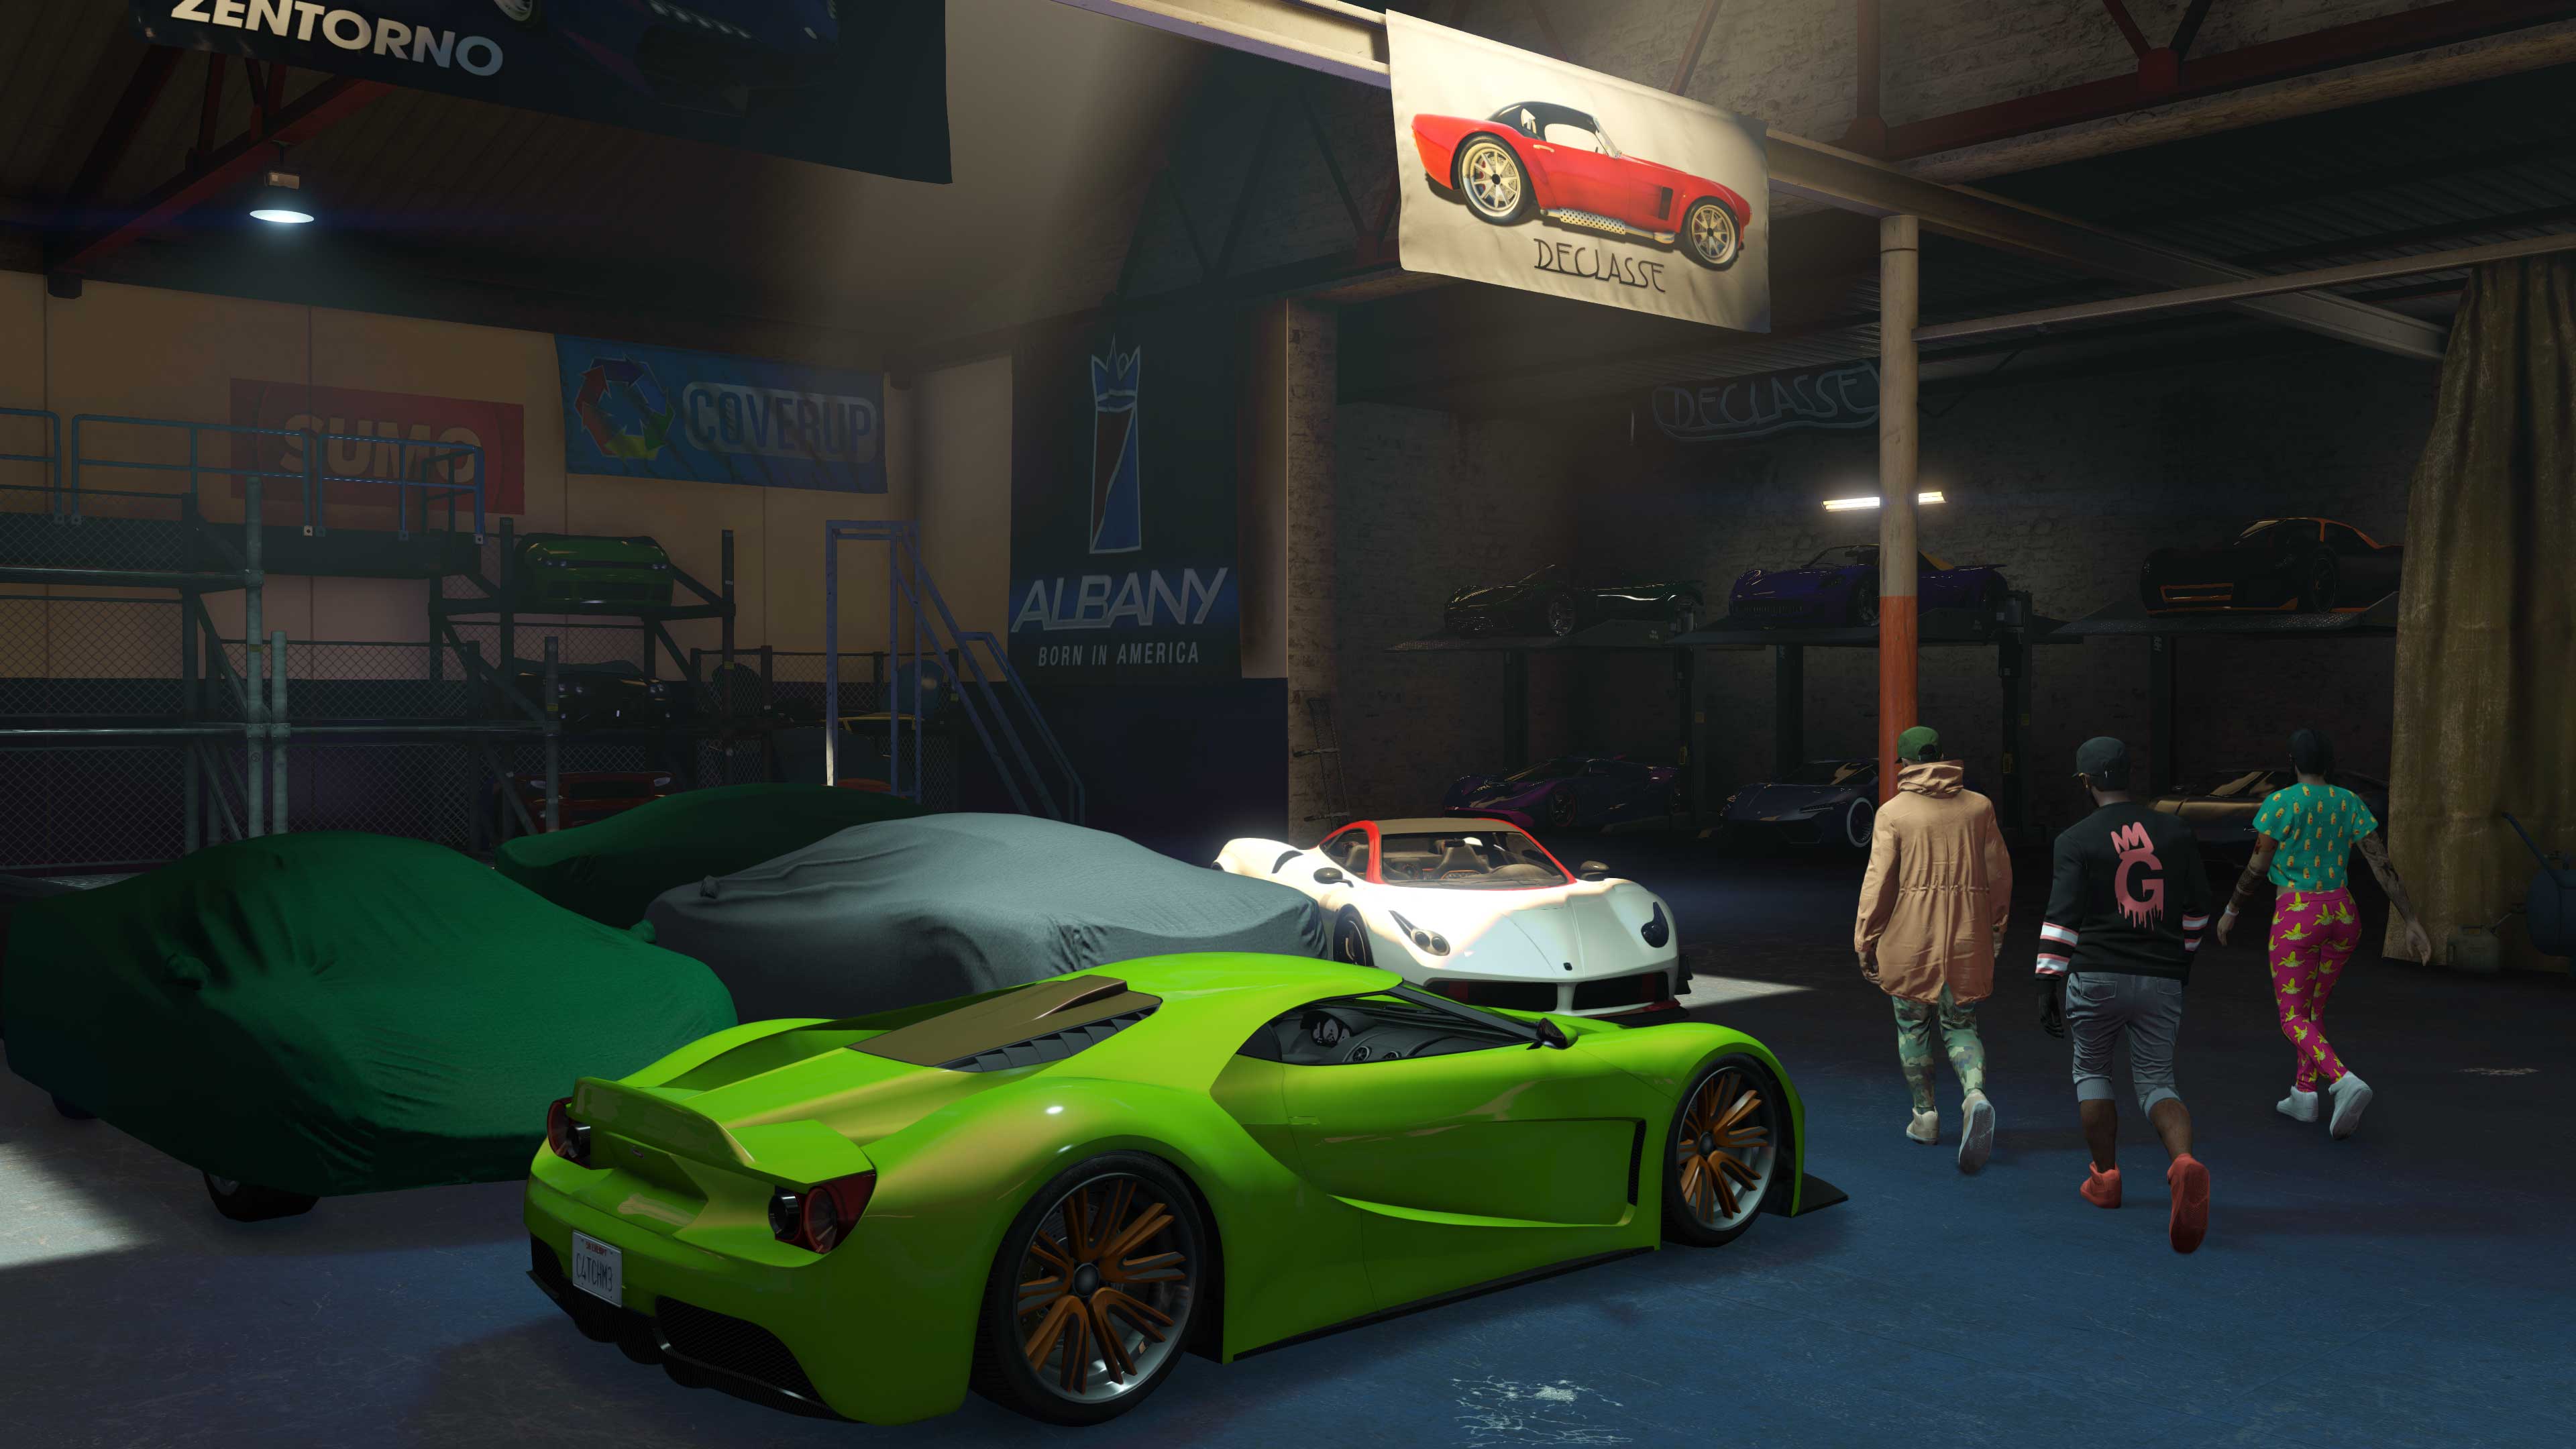 Immagine dei magazzini veicoli